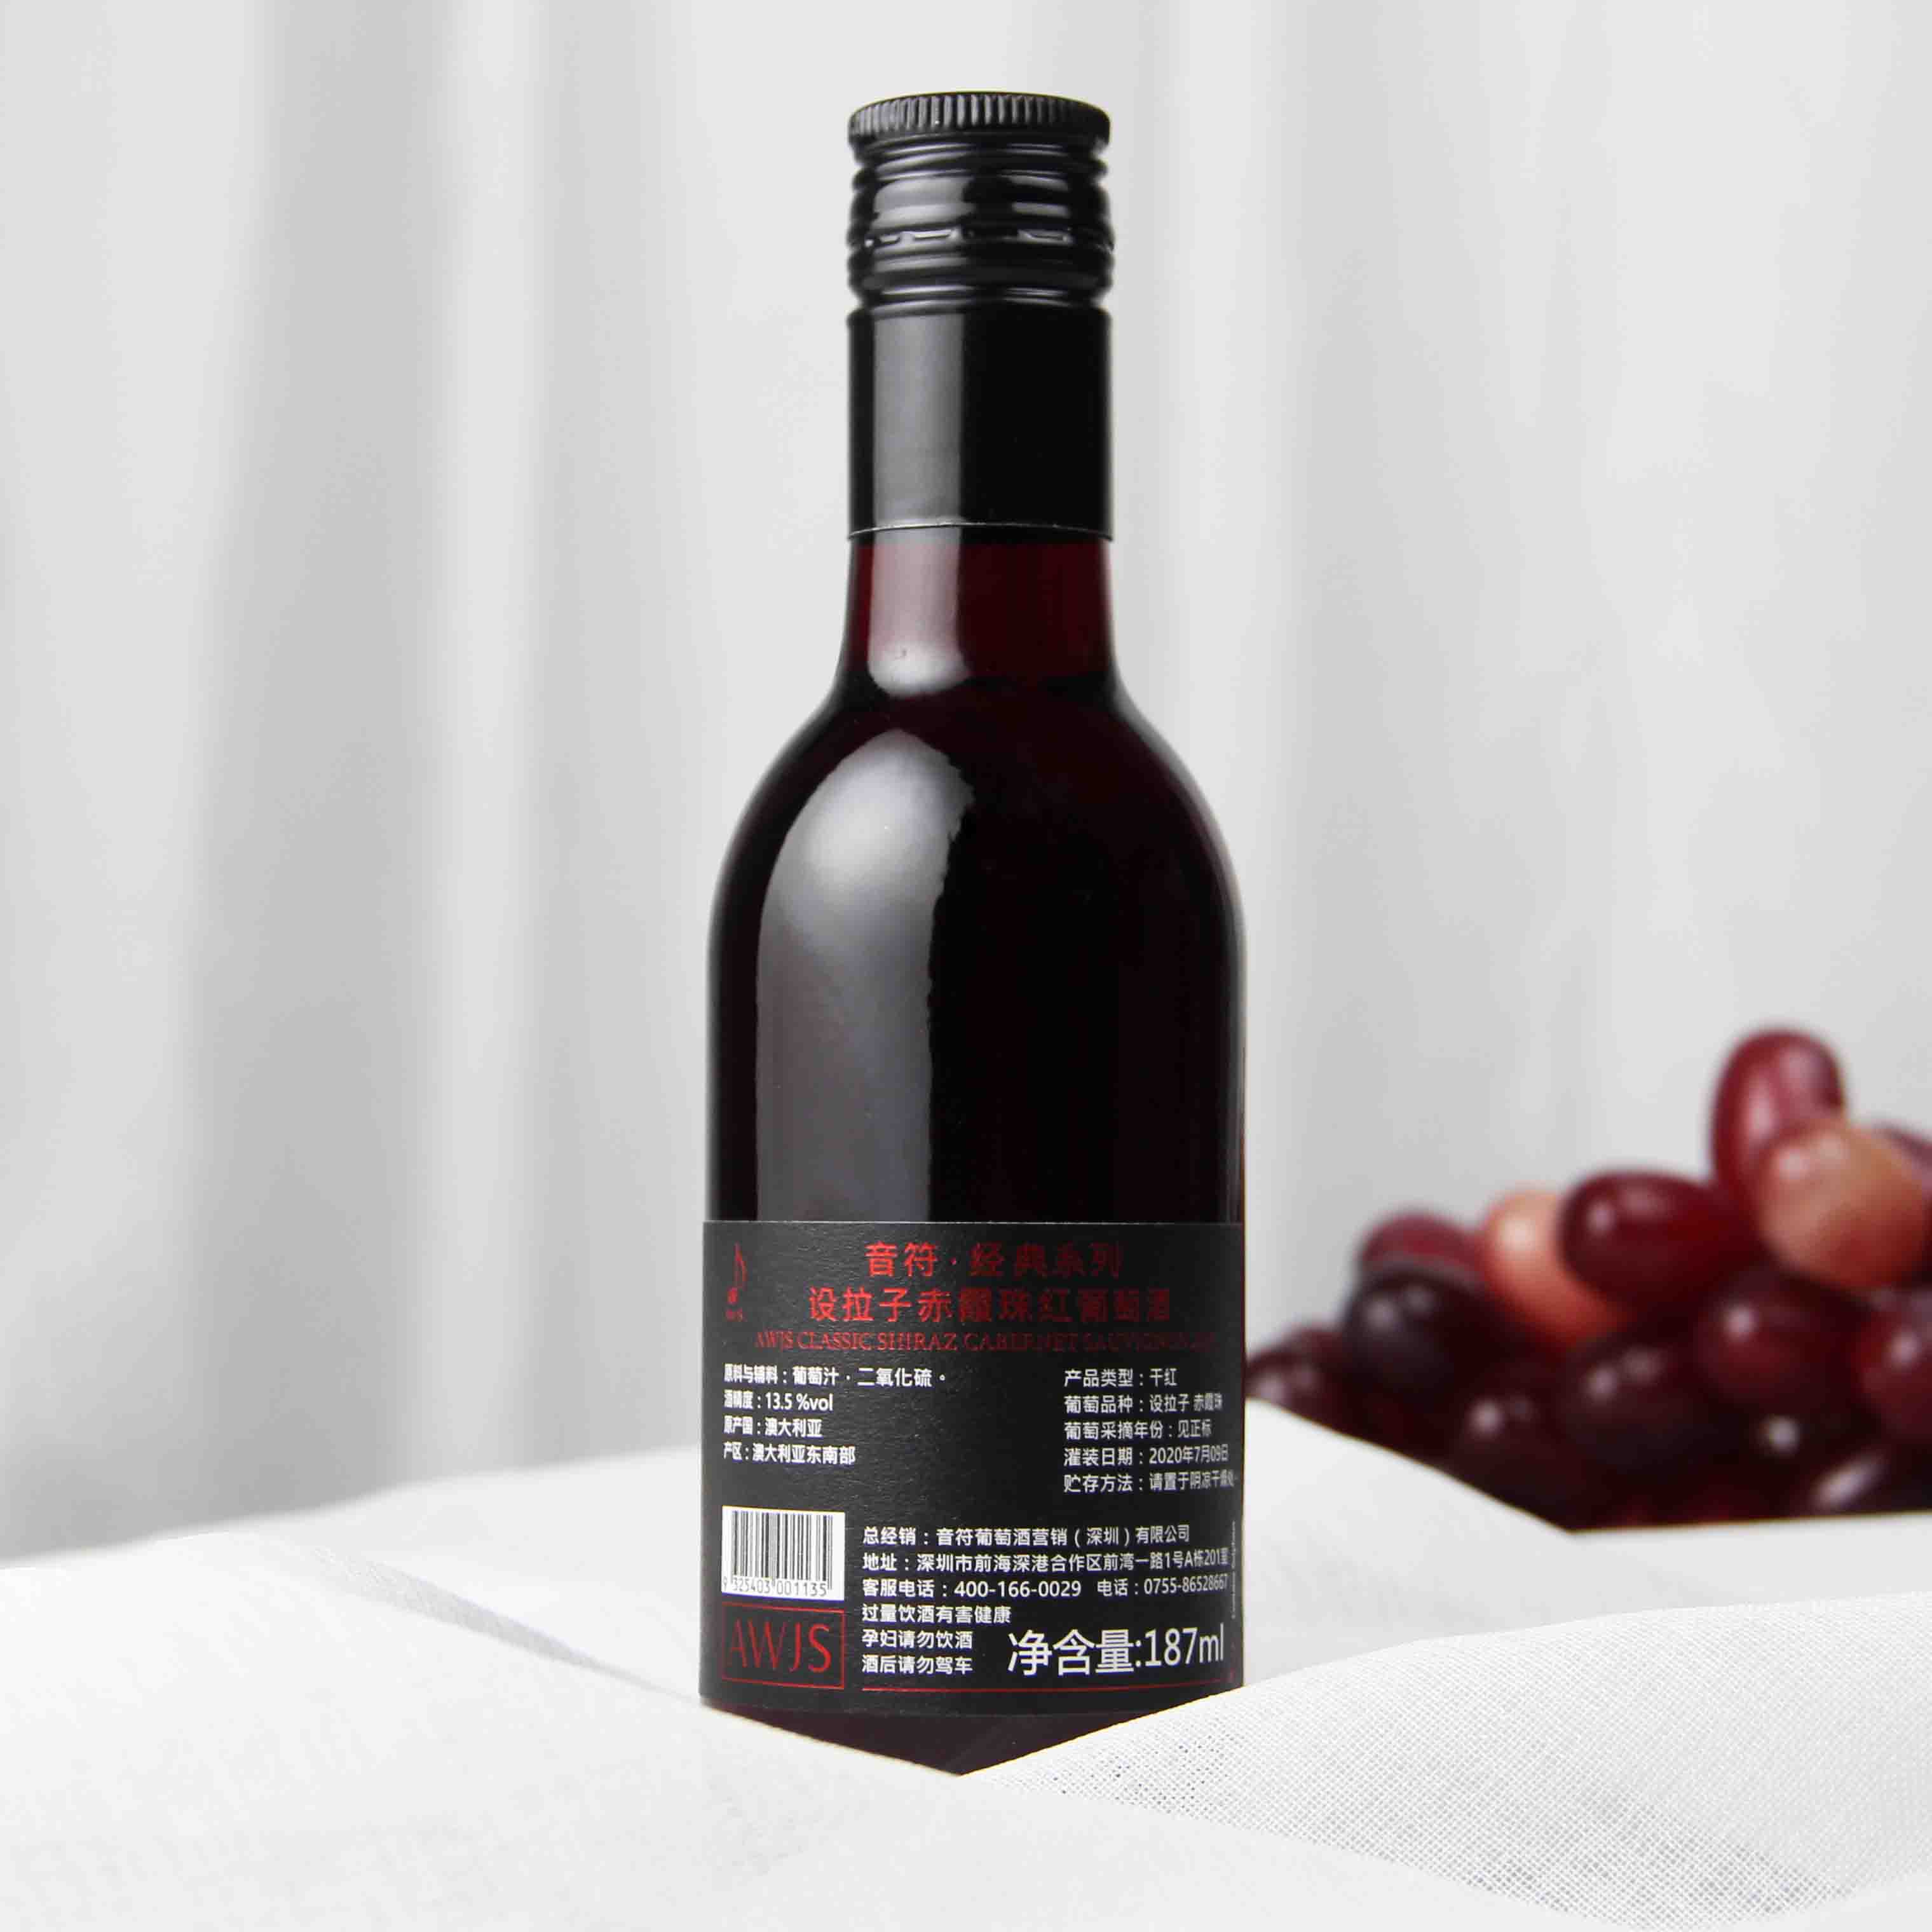 澳大利亚东南部音符・经典系列-西拉赤霞珠红葡萄酒